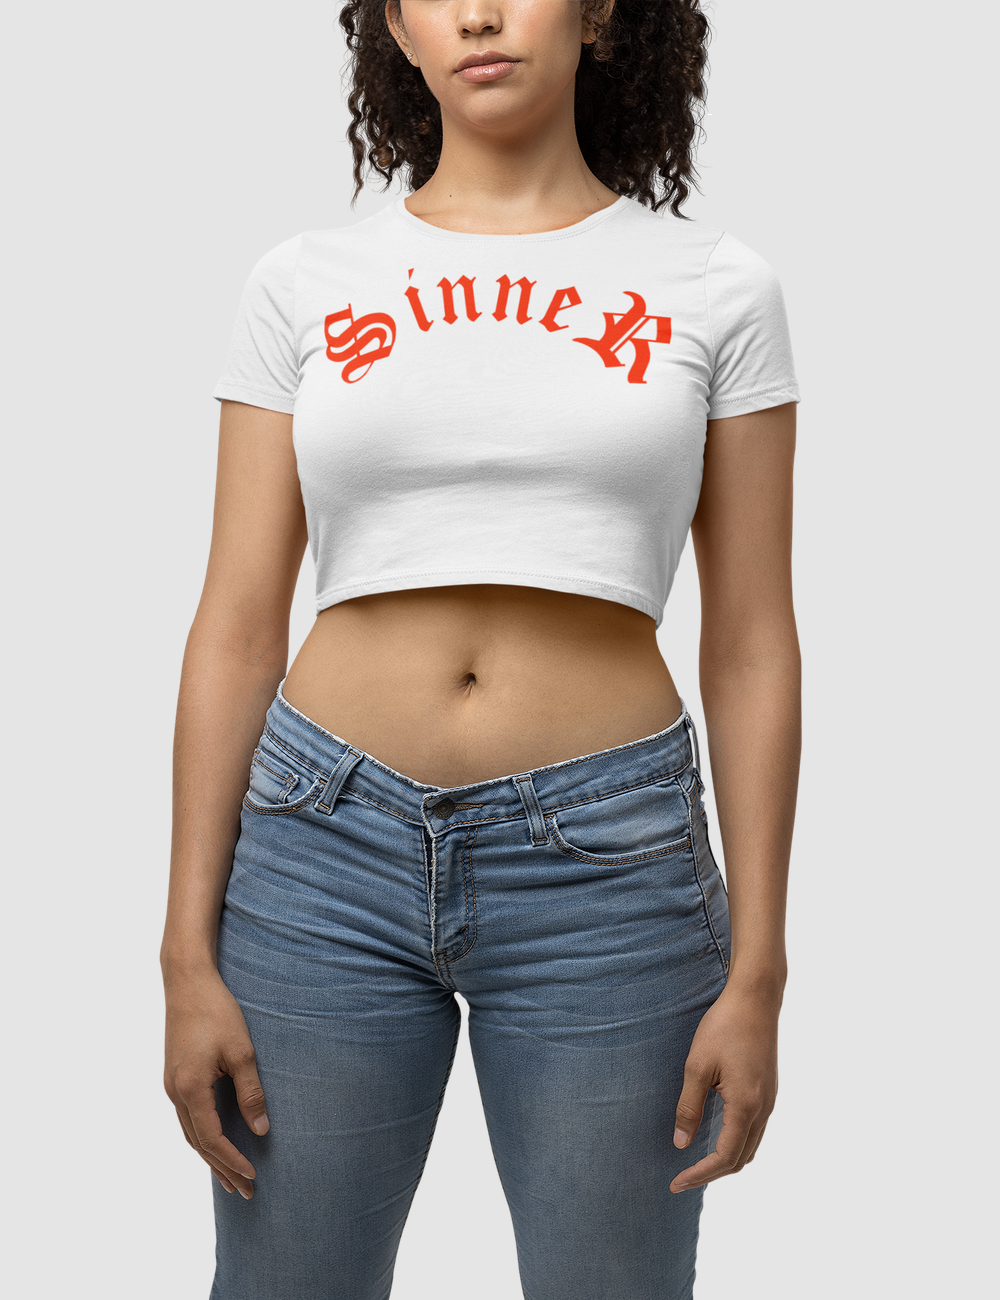 Sinner | Women's Fitted Crop Top T-Shirt OniTakai